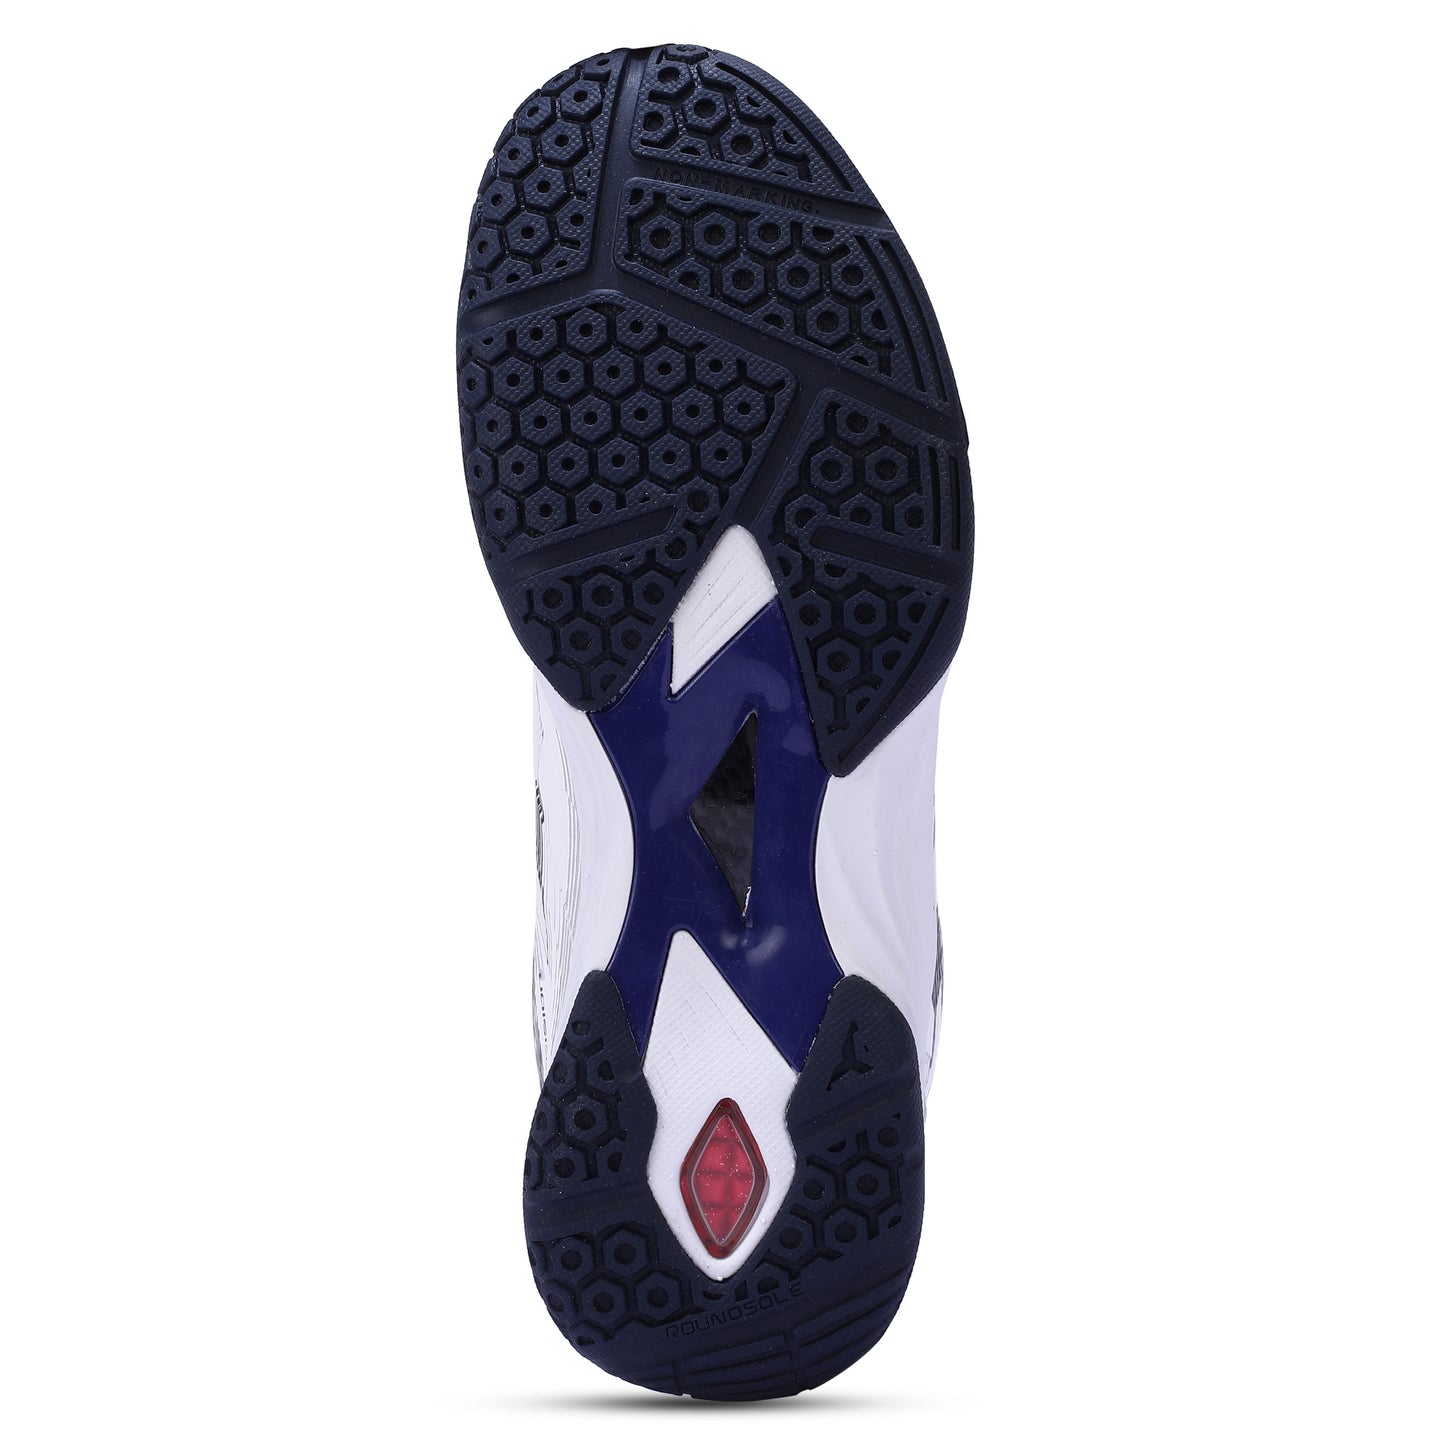 Yonex Precision 2 Men's Badminton Shoes - Best Price online Prokicksports.com